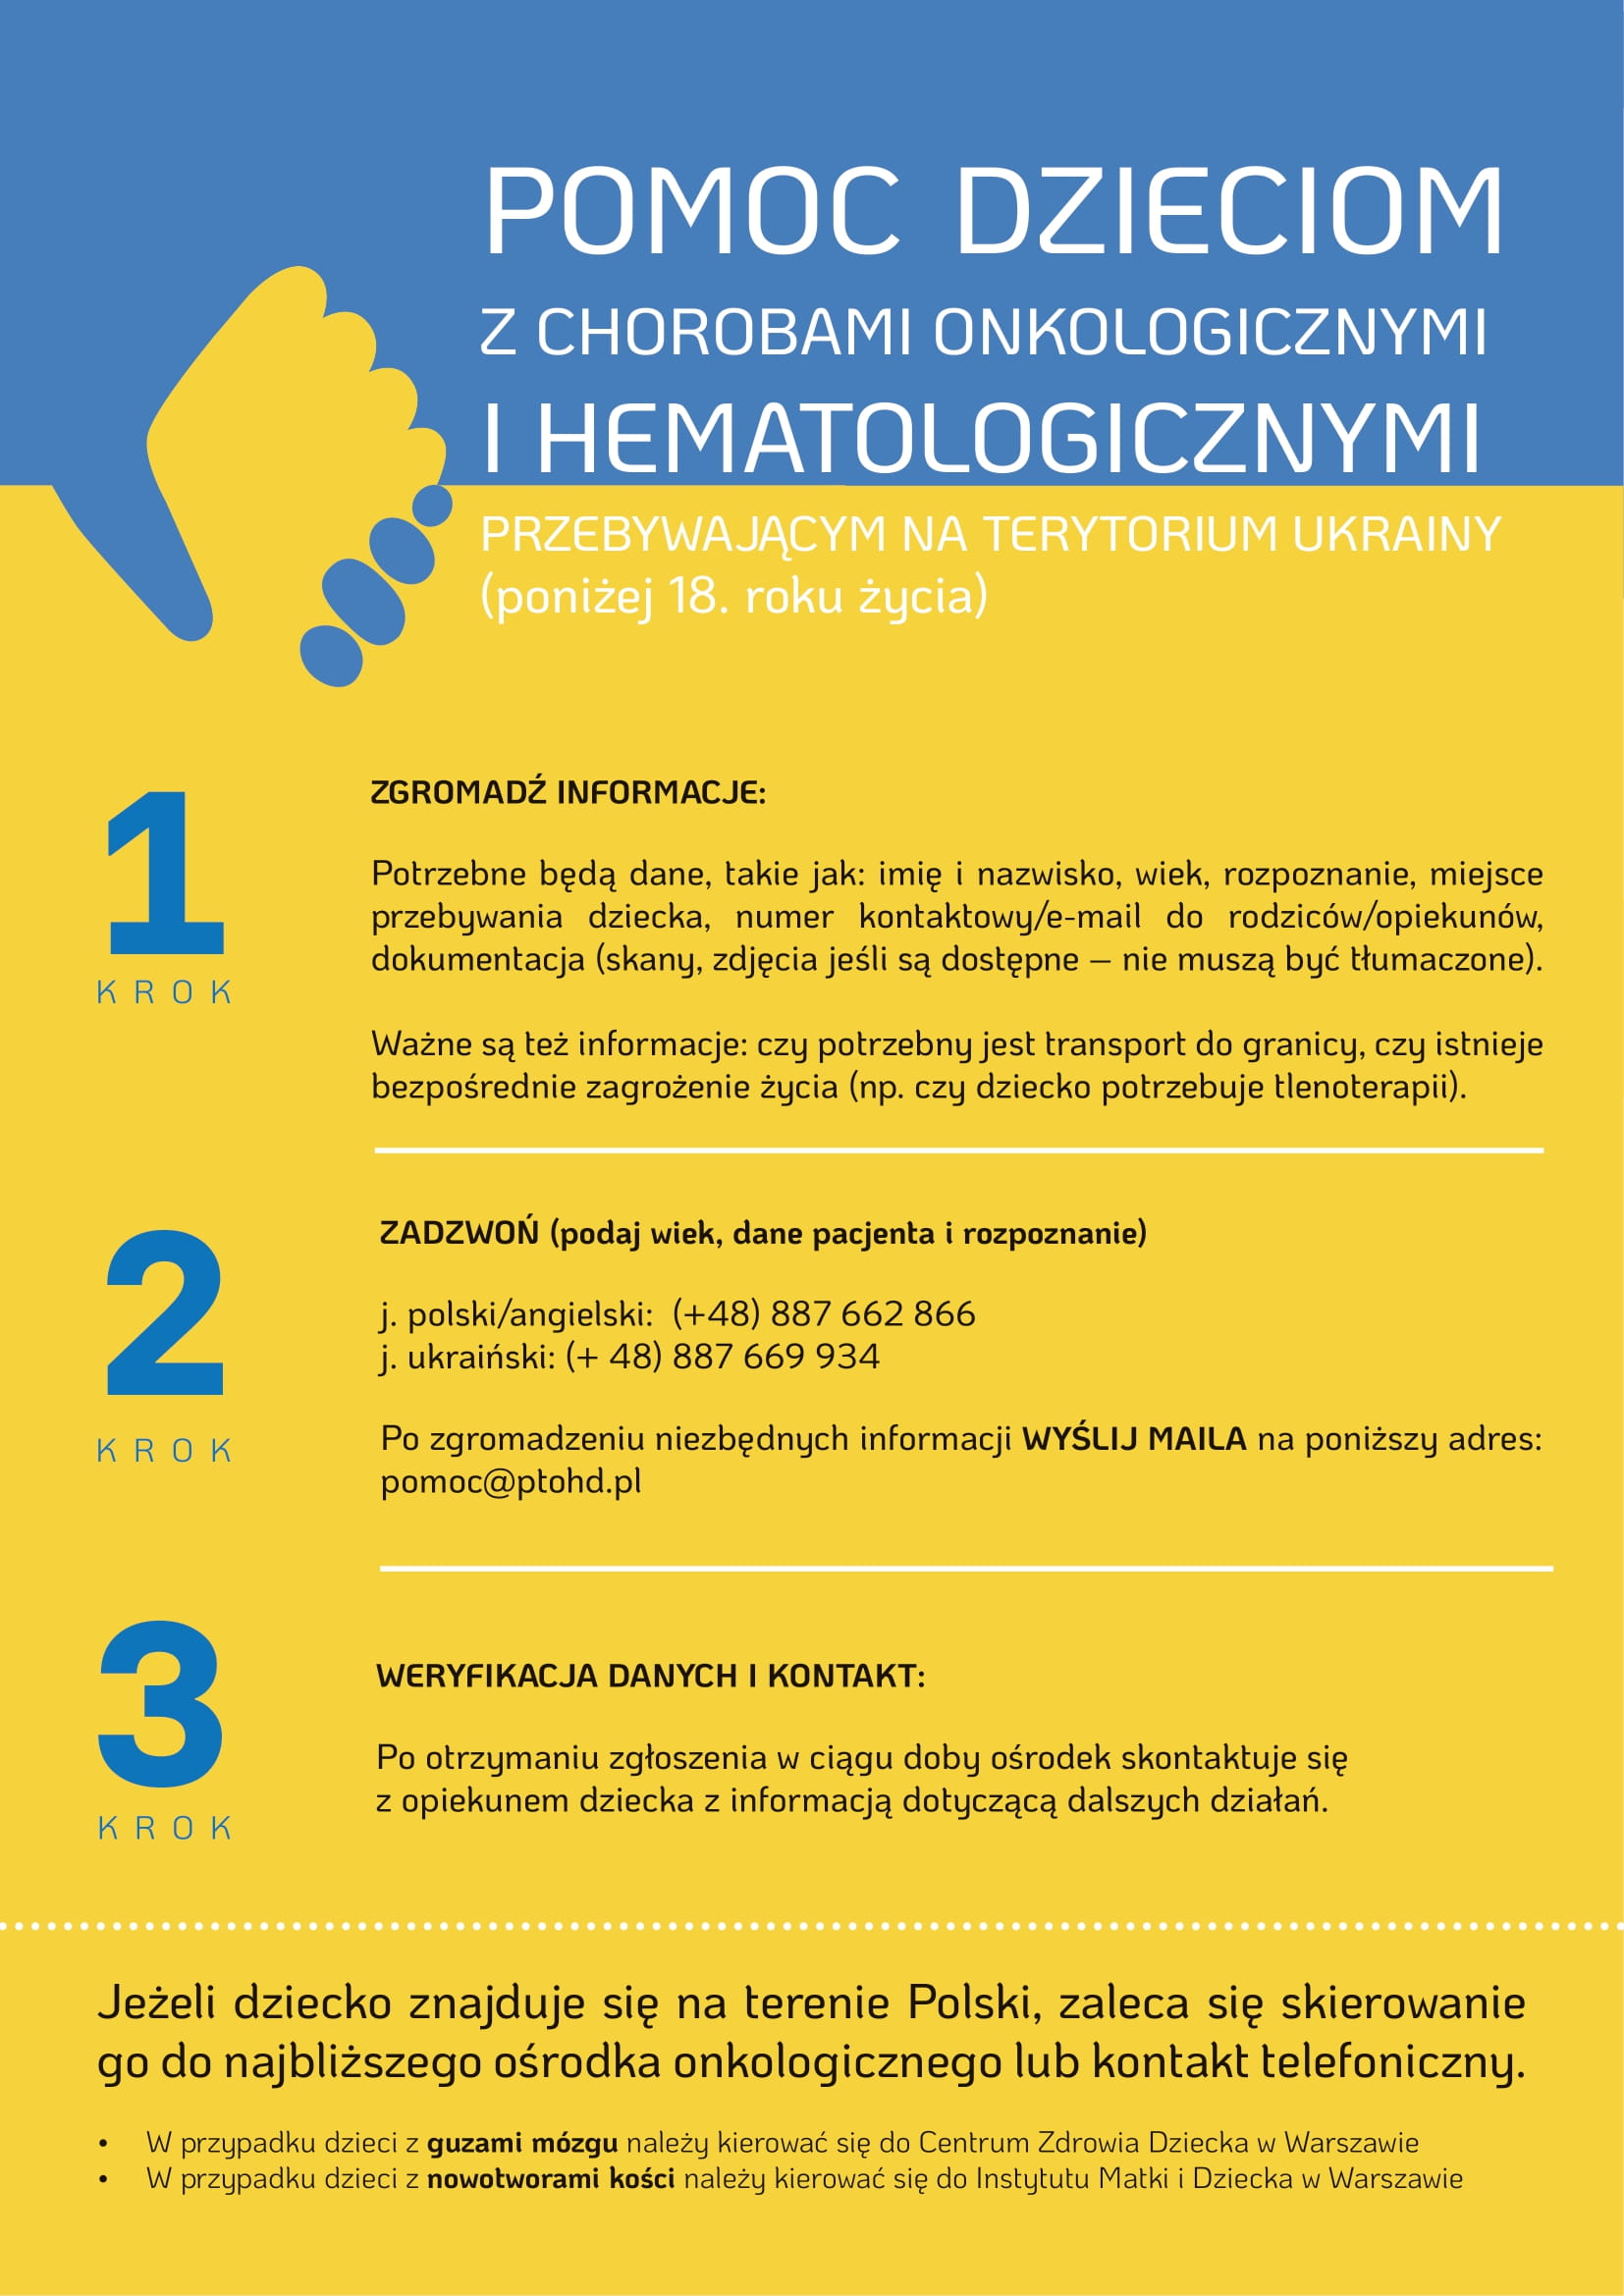 Pomoc w leczeniu dzieci onkologicznych z Ukrainy